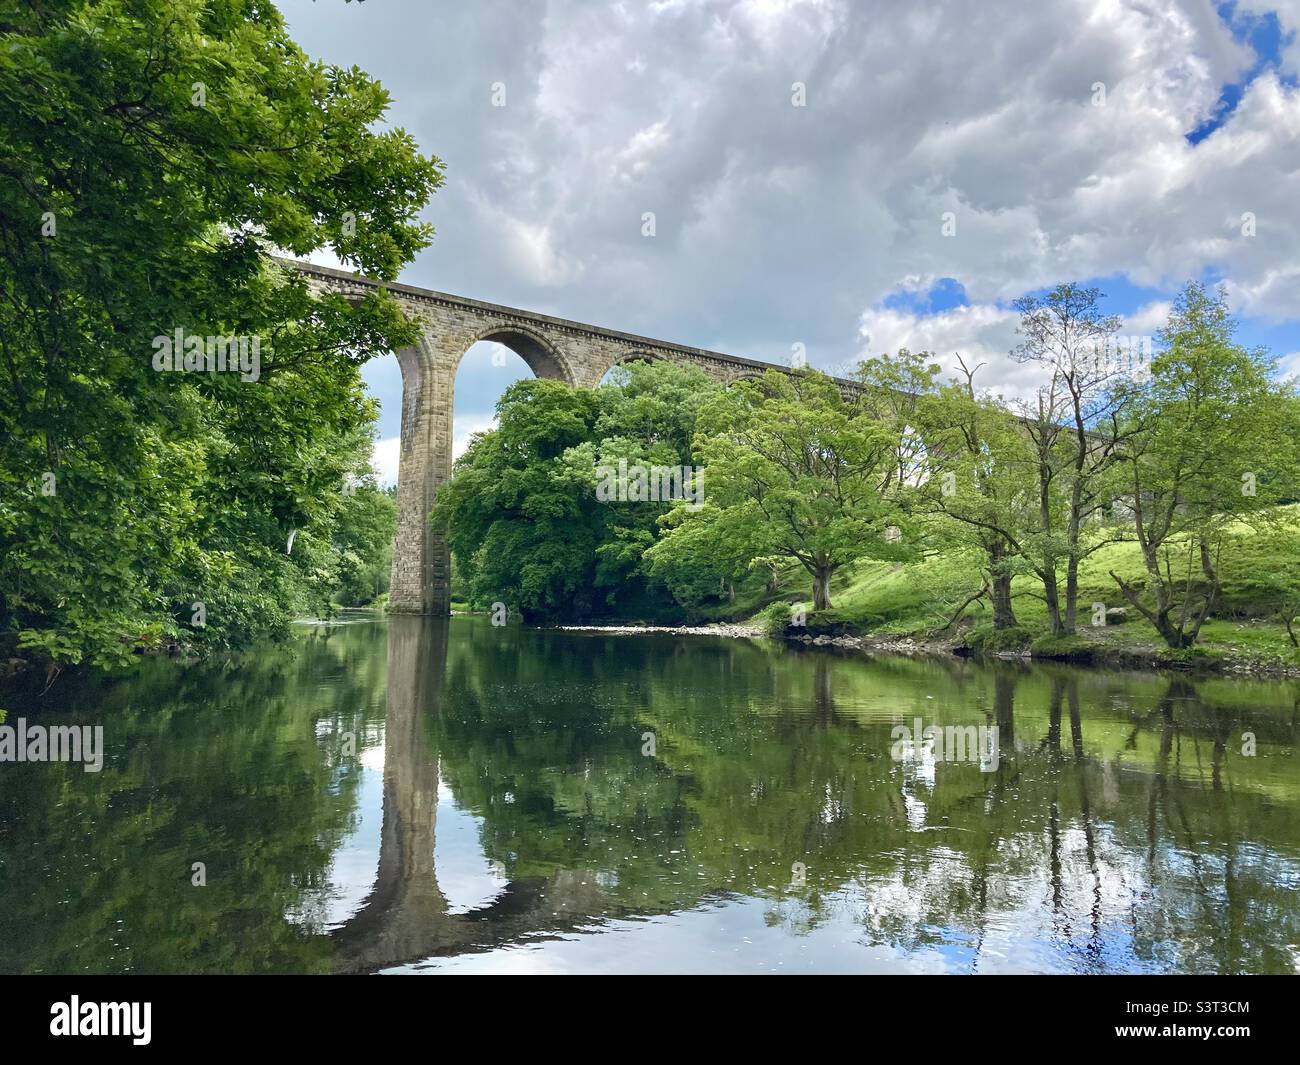 Train bridge over a river Stock Photo